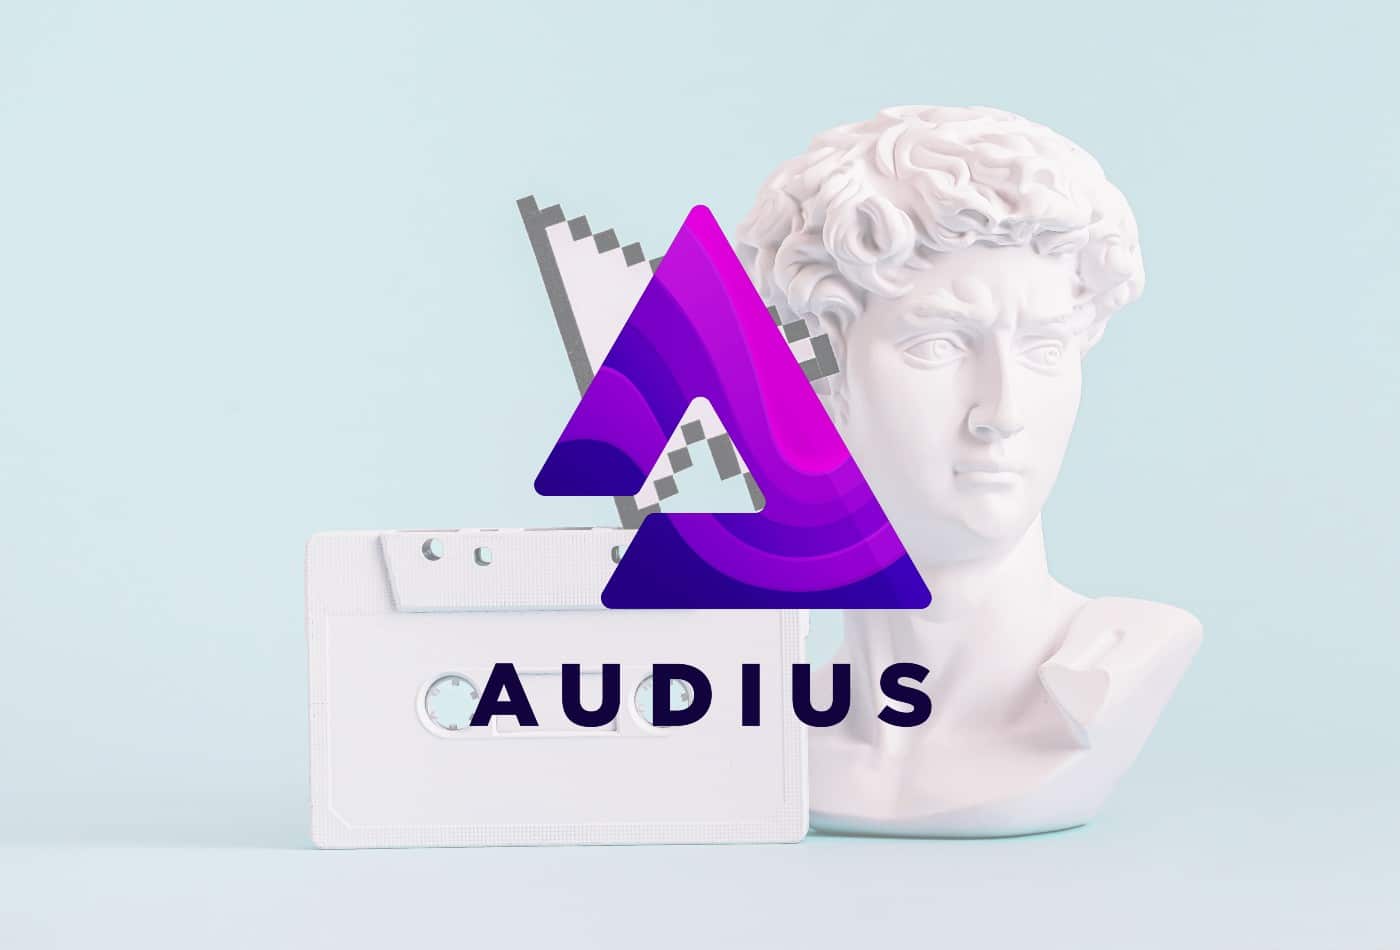 Audius (AUDIO) Price Prediction 2022-2030: Will It Reach $5?